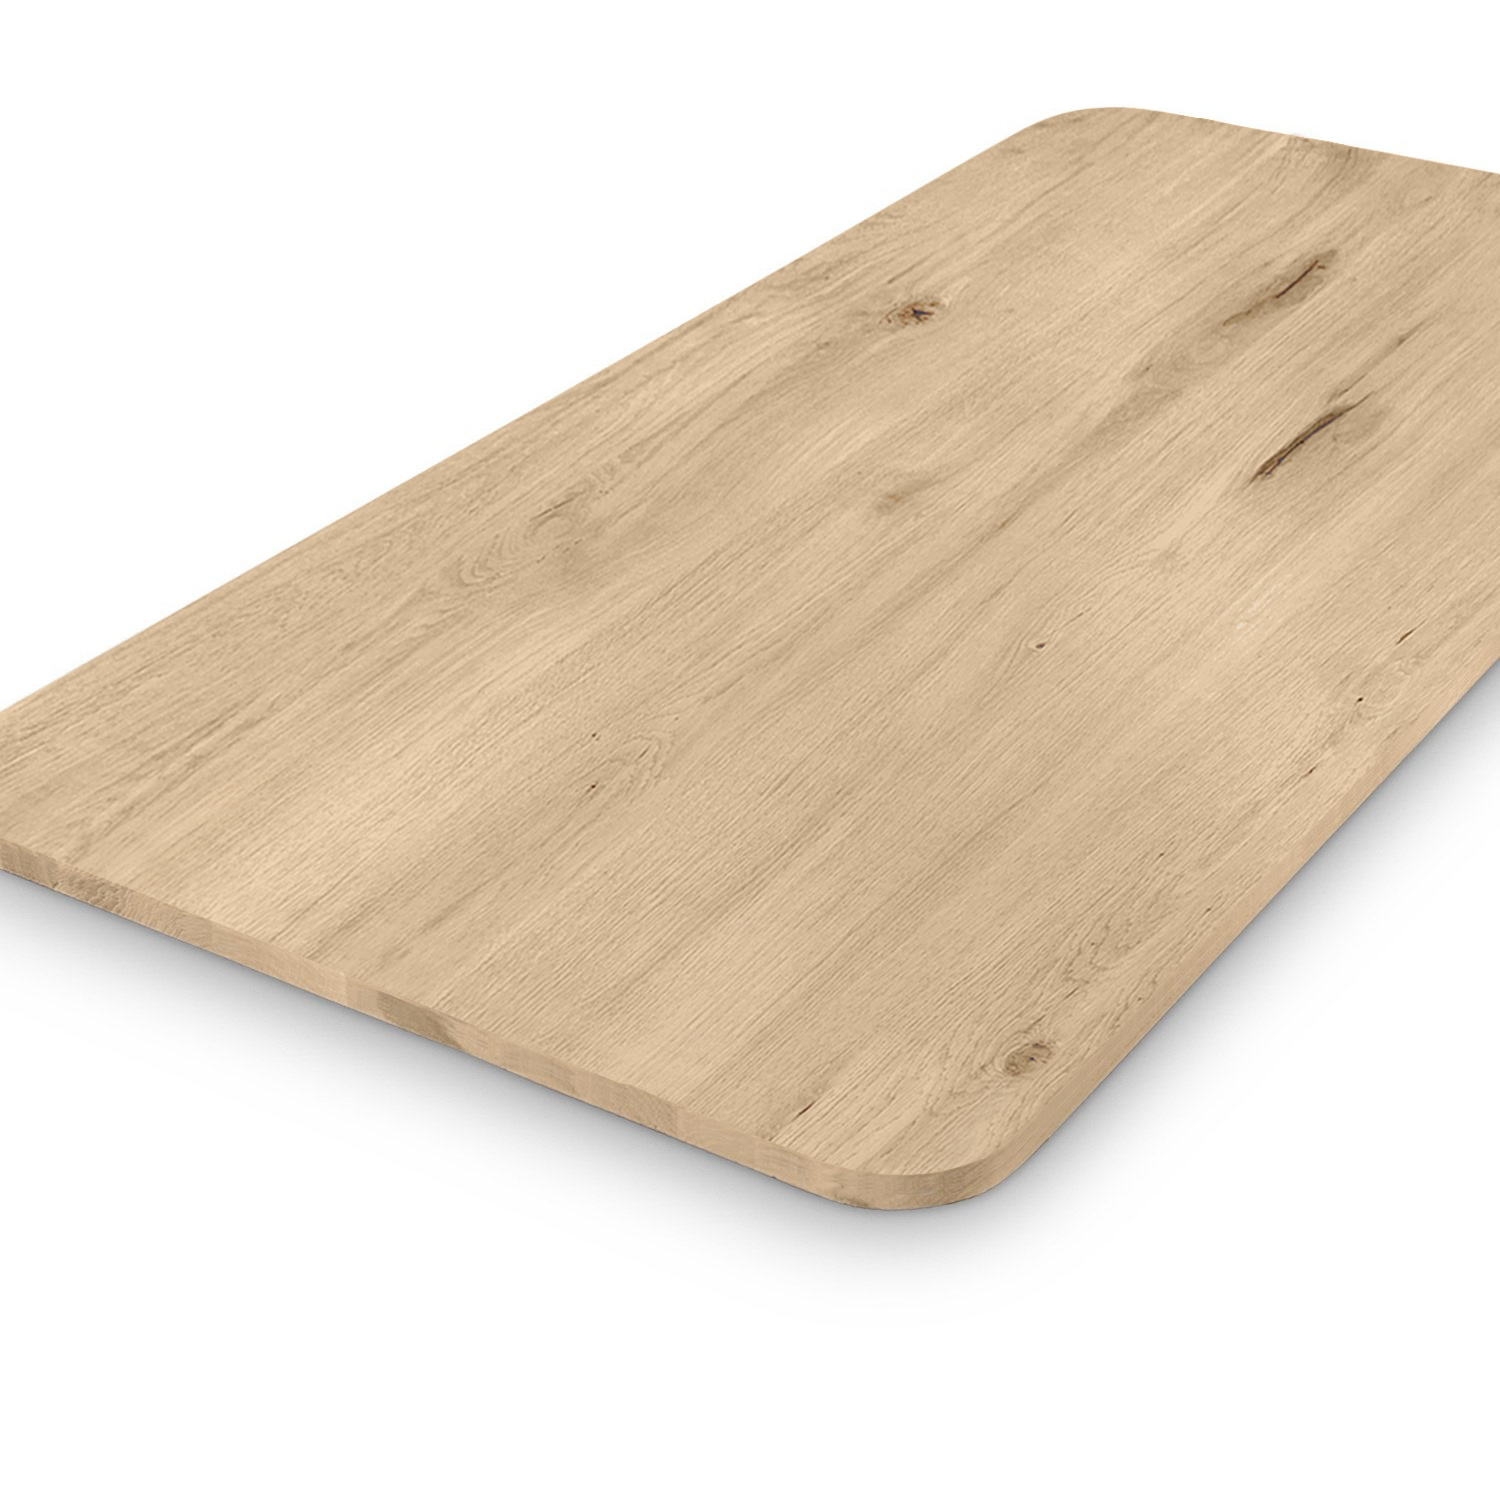  Tischplatte Wildeiche - mit runden Ecken - 3 cm dick (1-Schicht) - XXL Lamellen (14-20 cm breit) - Asteiche (rustikal) - verleimt & künstlich getrocknet (HF 8-12%) - mit abgerundeten Kanten - verschiedene Größen